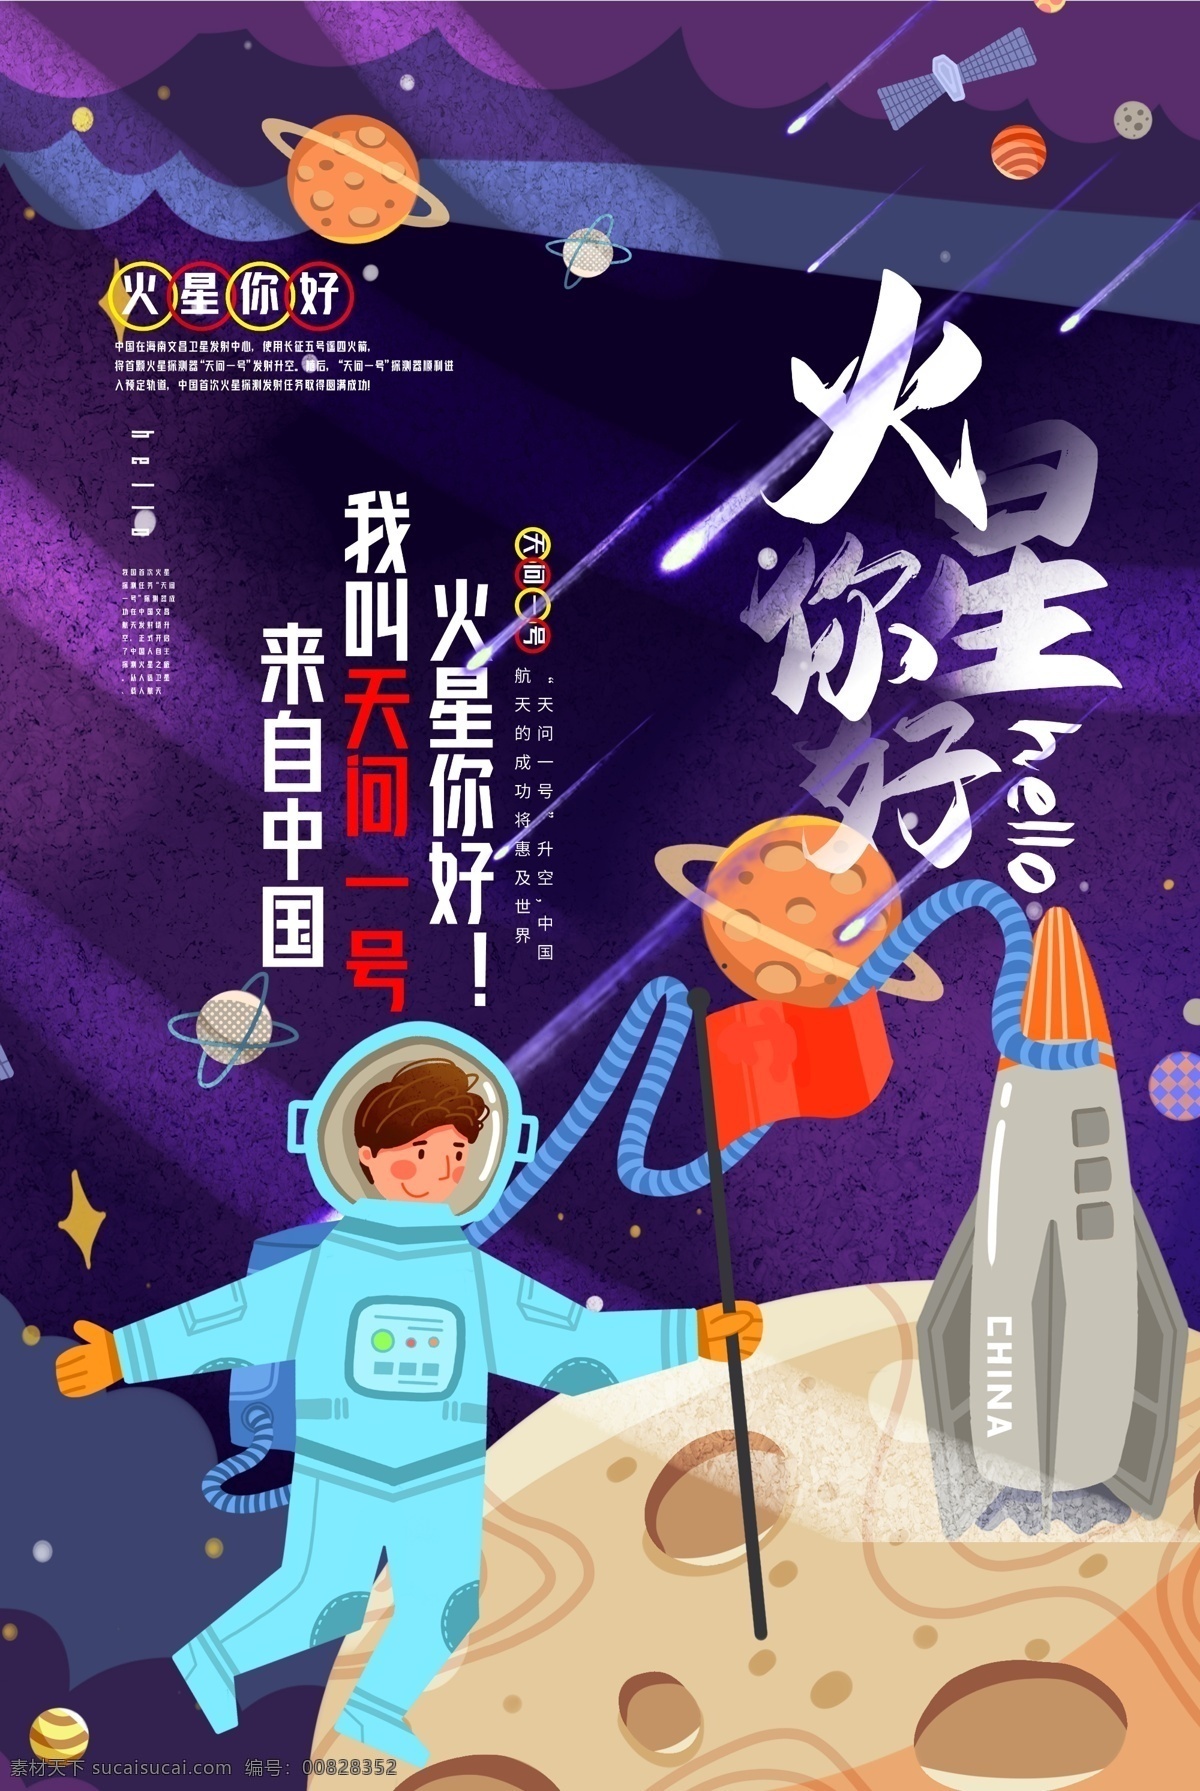 天问一号 天问1号 启航火星 火星中国来了 中国火星探测 逐梦火星 神舟五号 火箭 地球